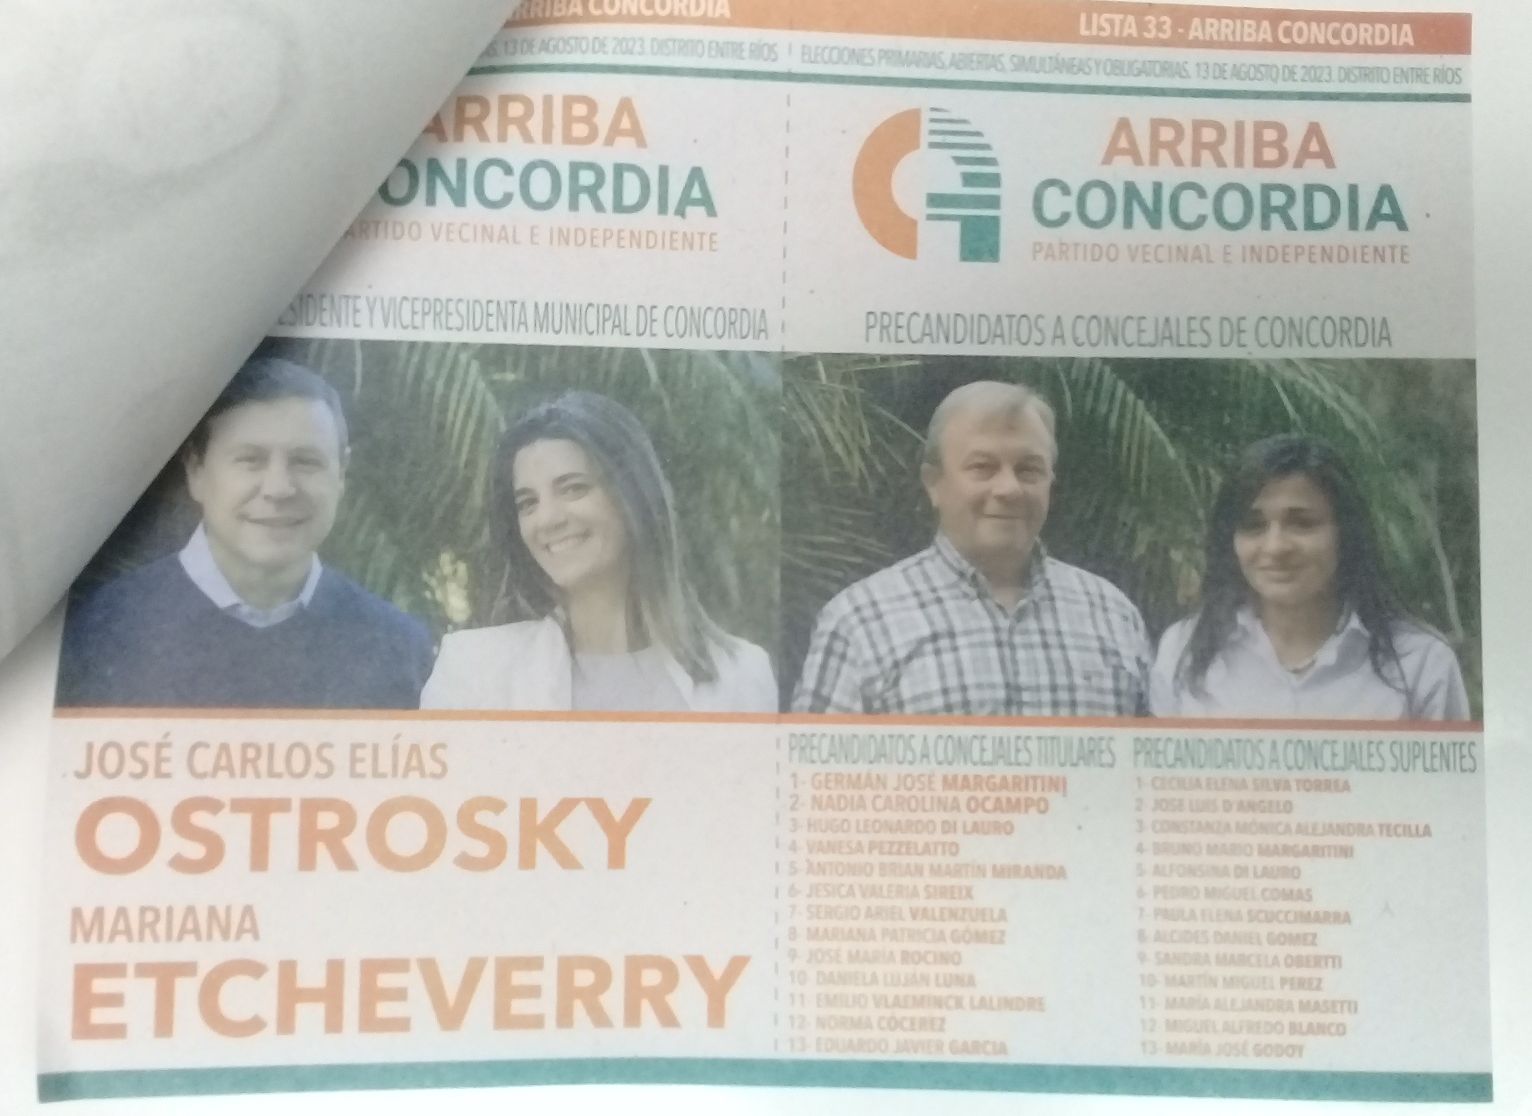 Lista 33: Arriba Concordia - José Carlos Elías Ostrosky.